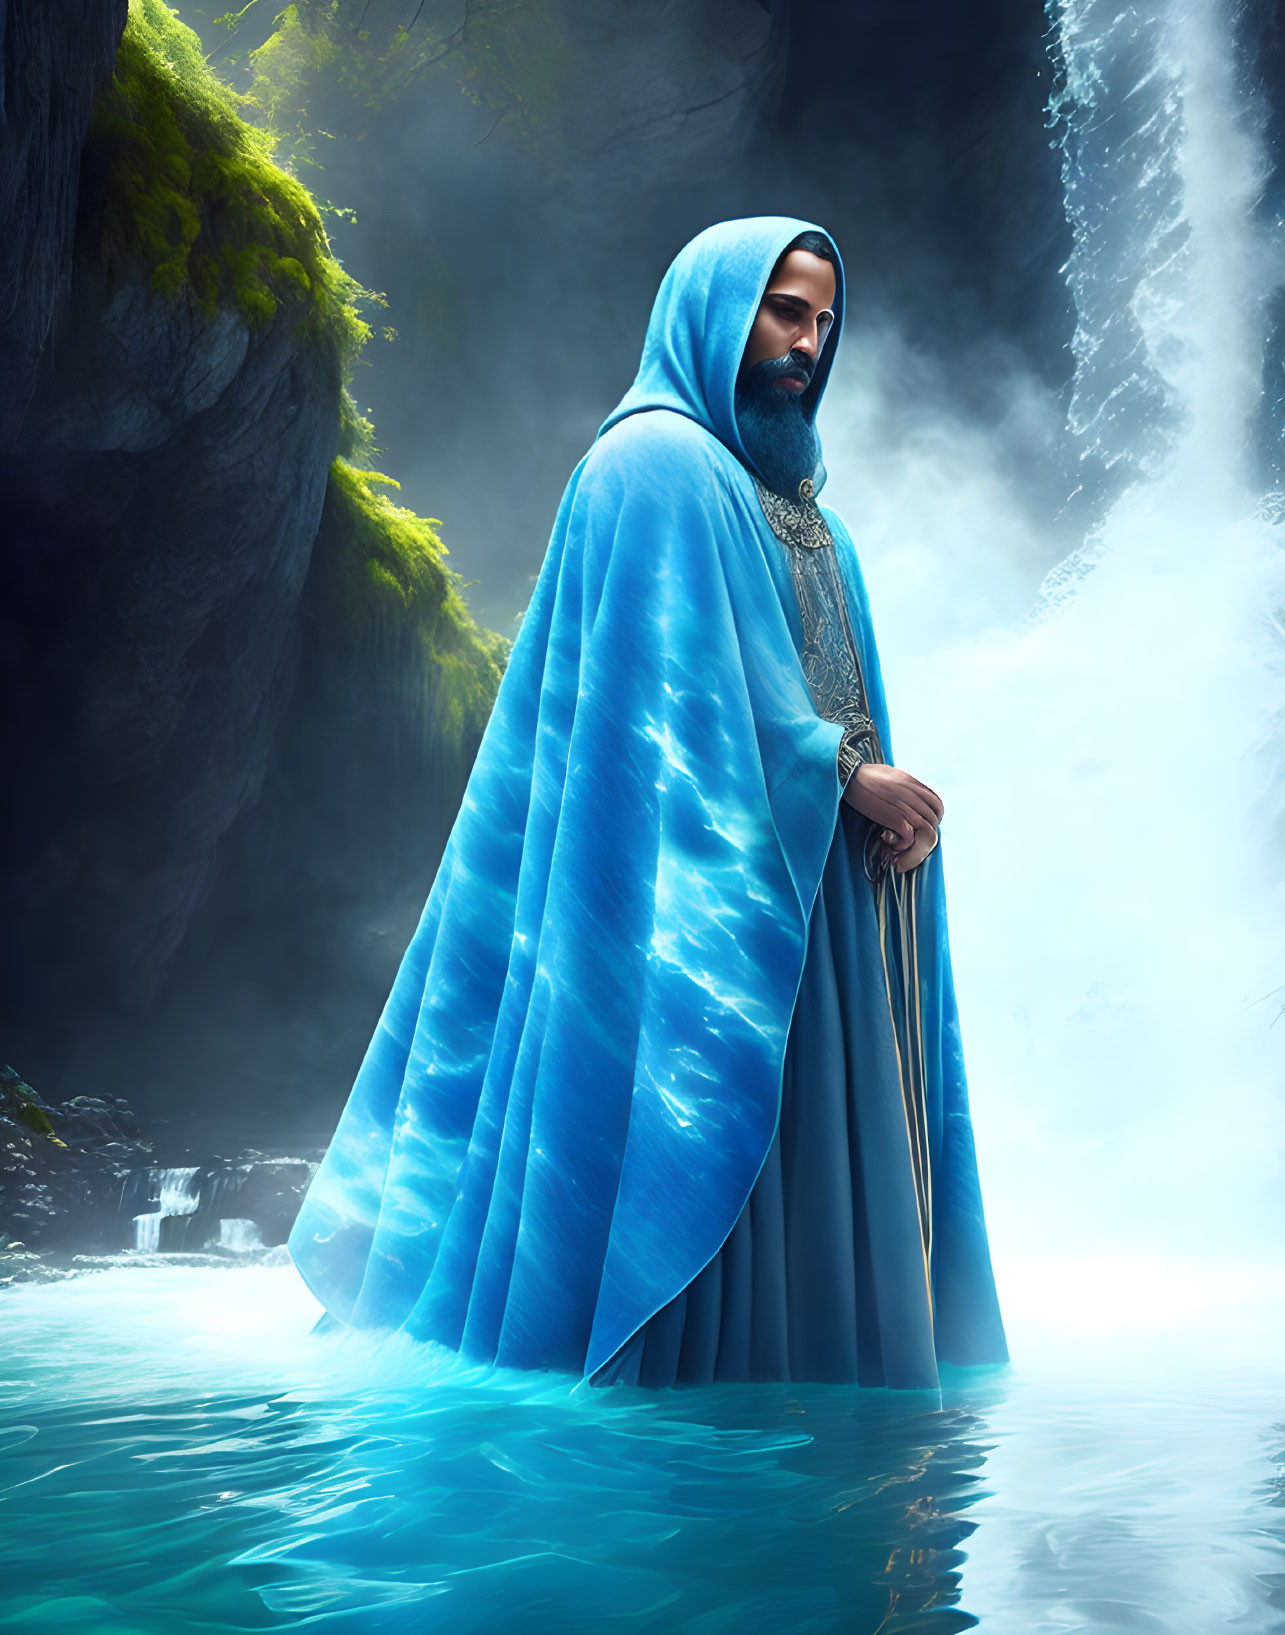 Bearded Figure in Blue Cloak Contemplates by Water Body